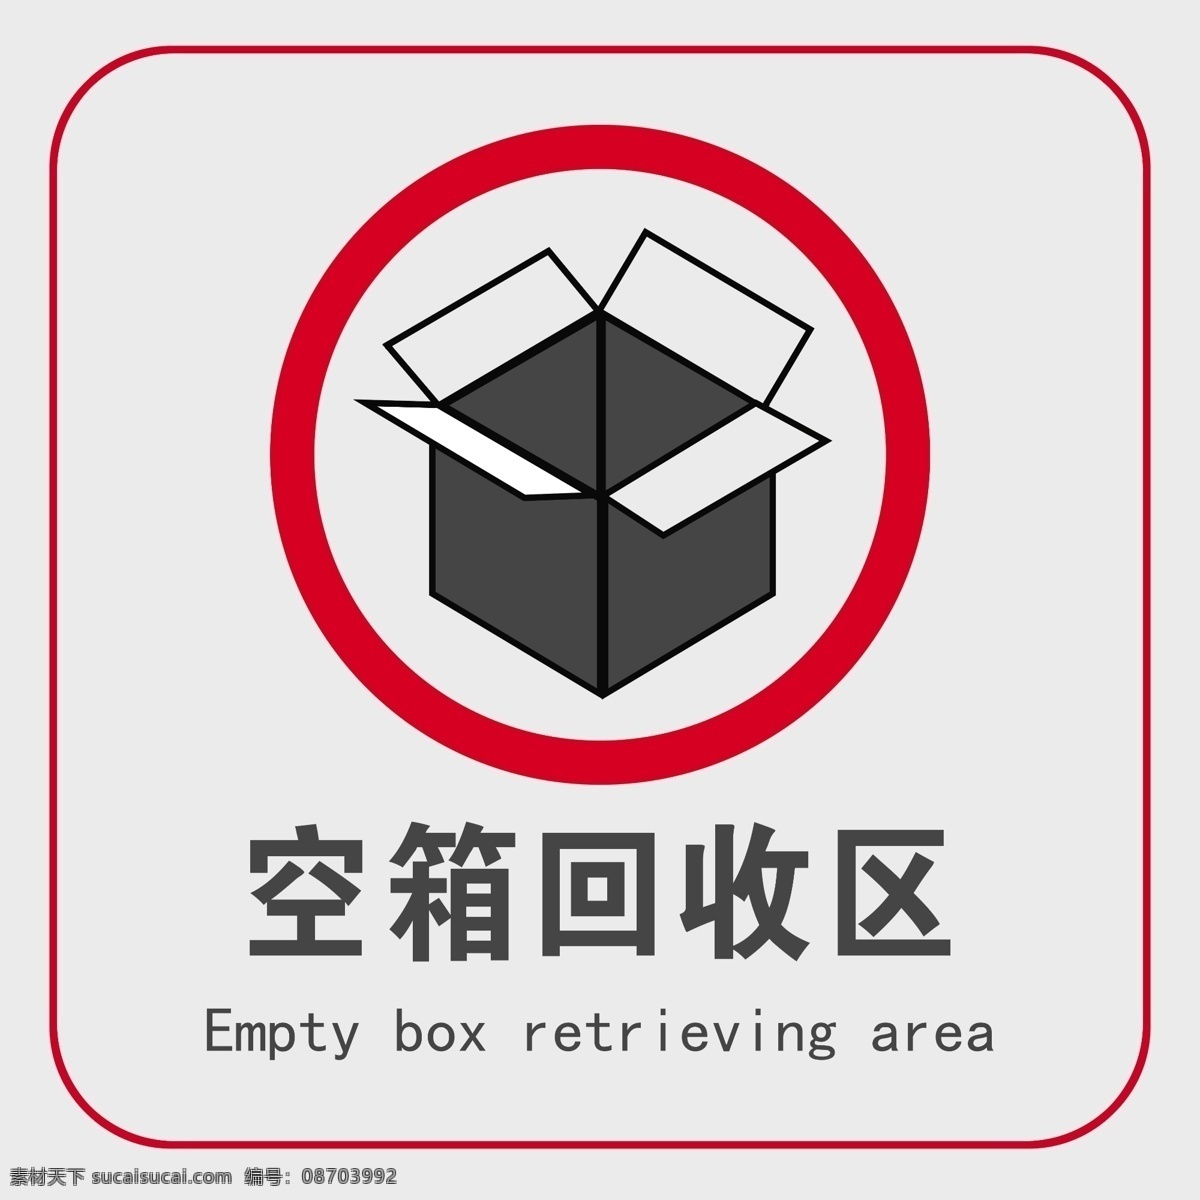 空箱 回收 区 空箱回收区 警示牌 提示牌 标识 警戒